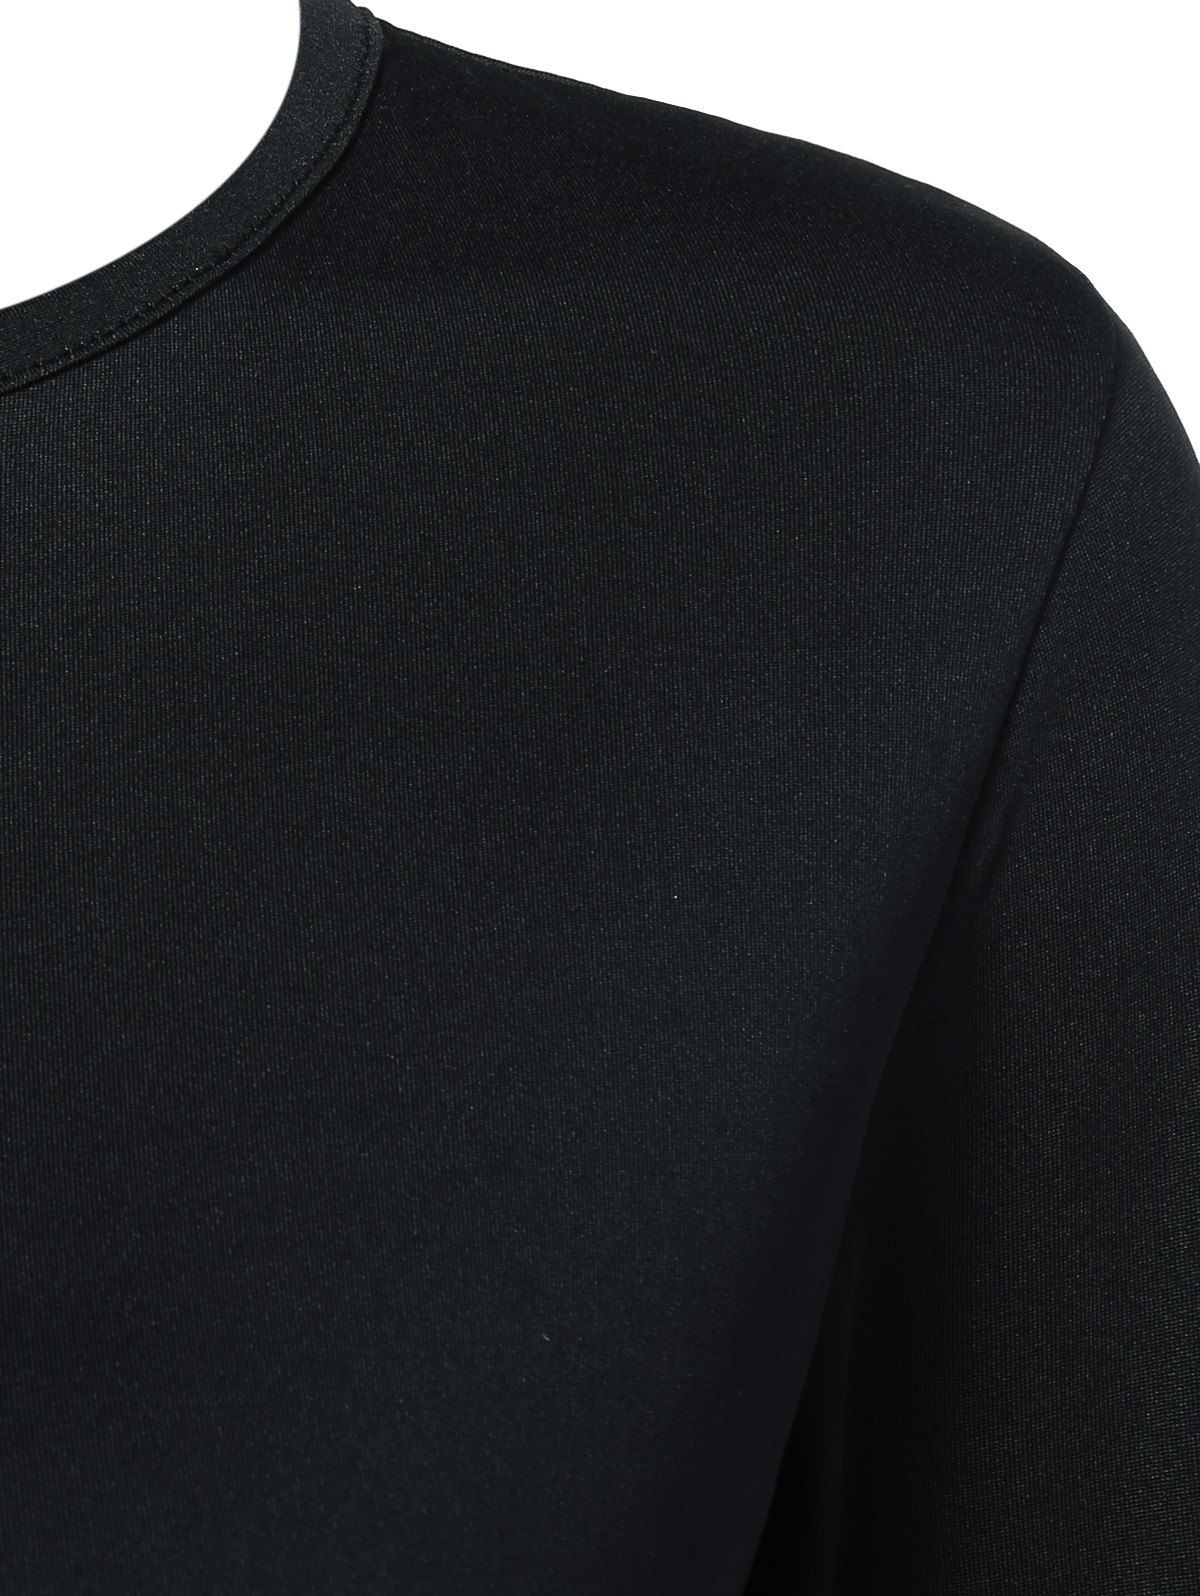 2018 Stripe Color Block Slim Fitted Tee BLACK XL In Long Sleeves Online ...